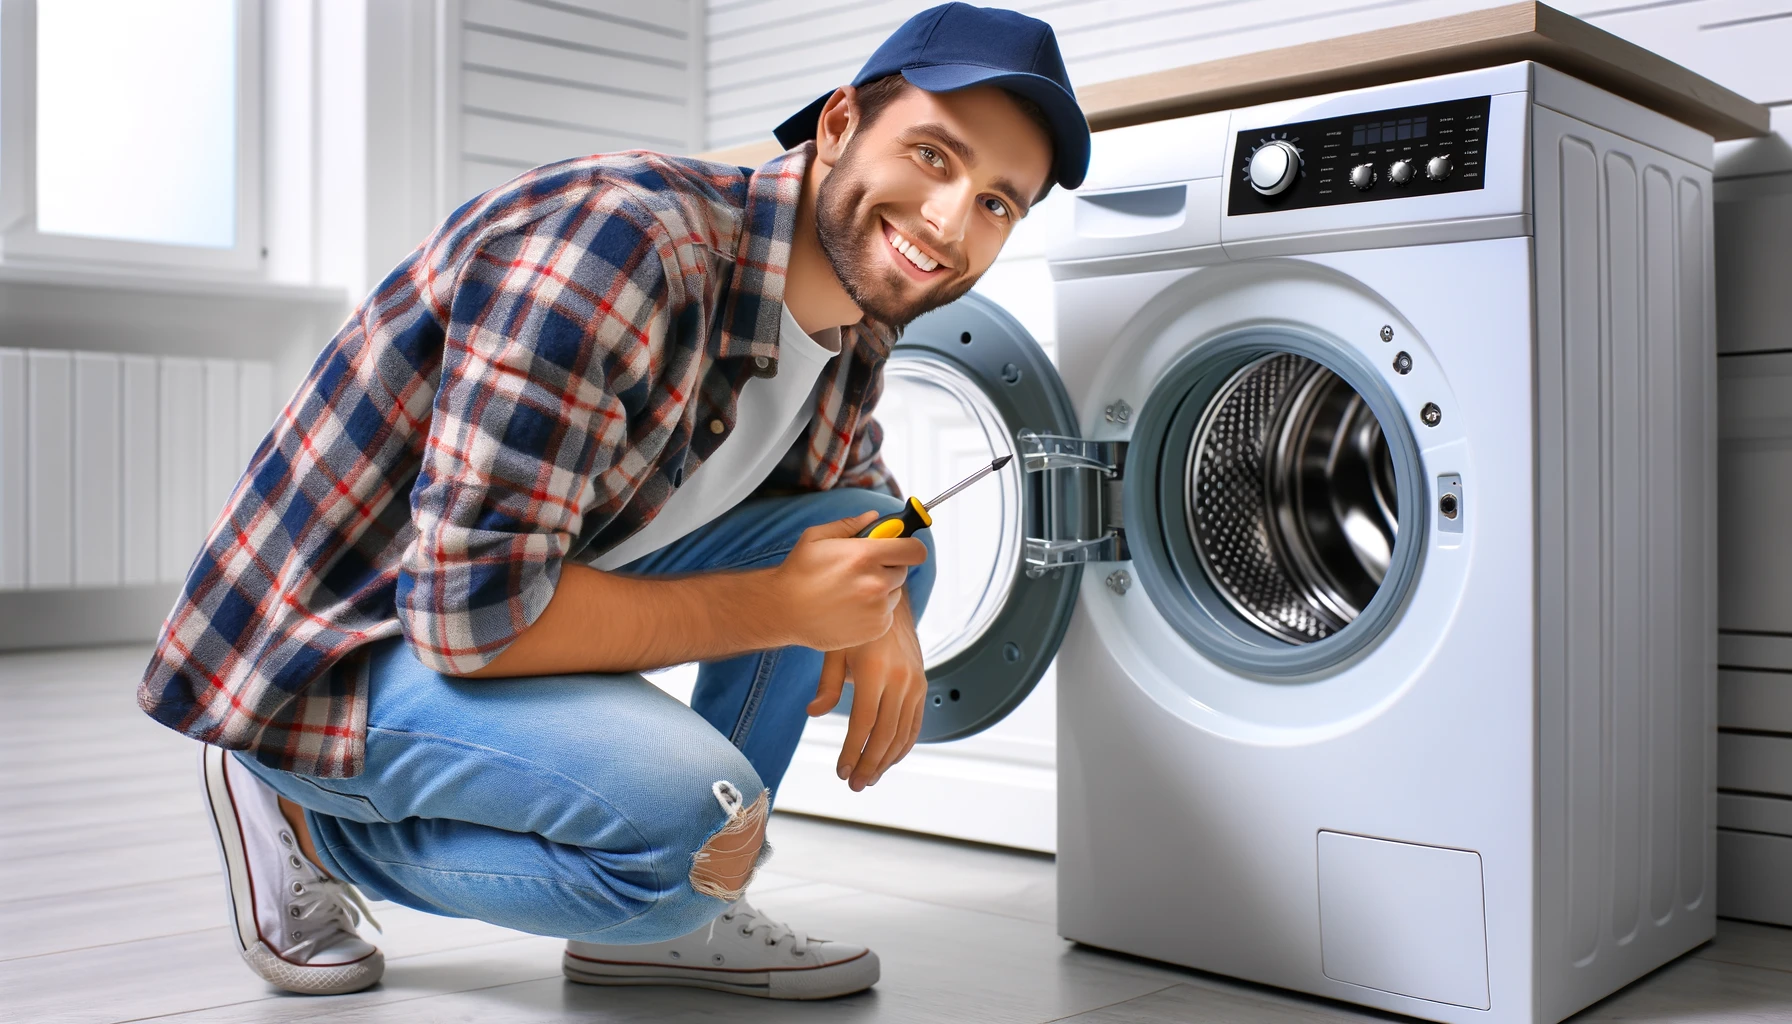 DIY'er fixing a washing machine image